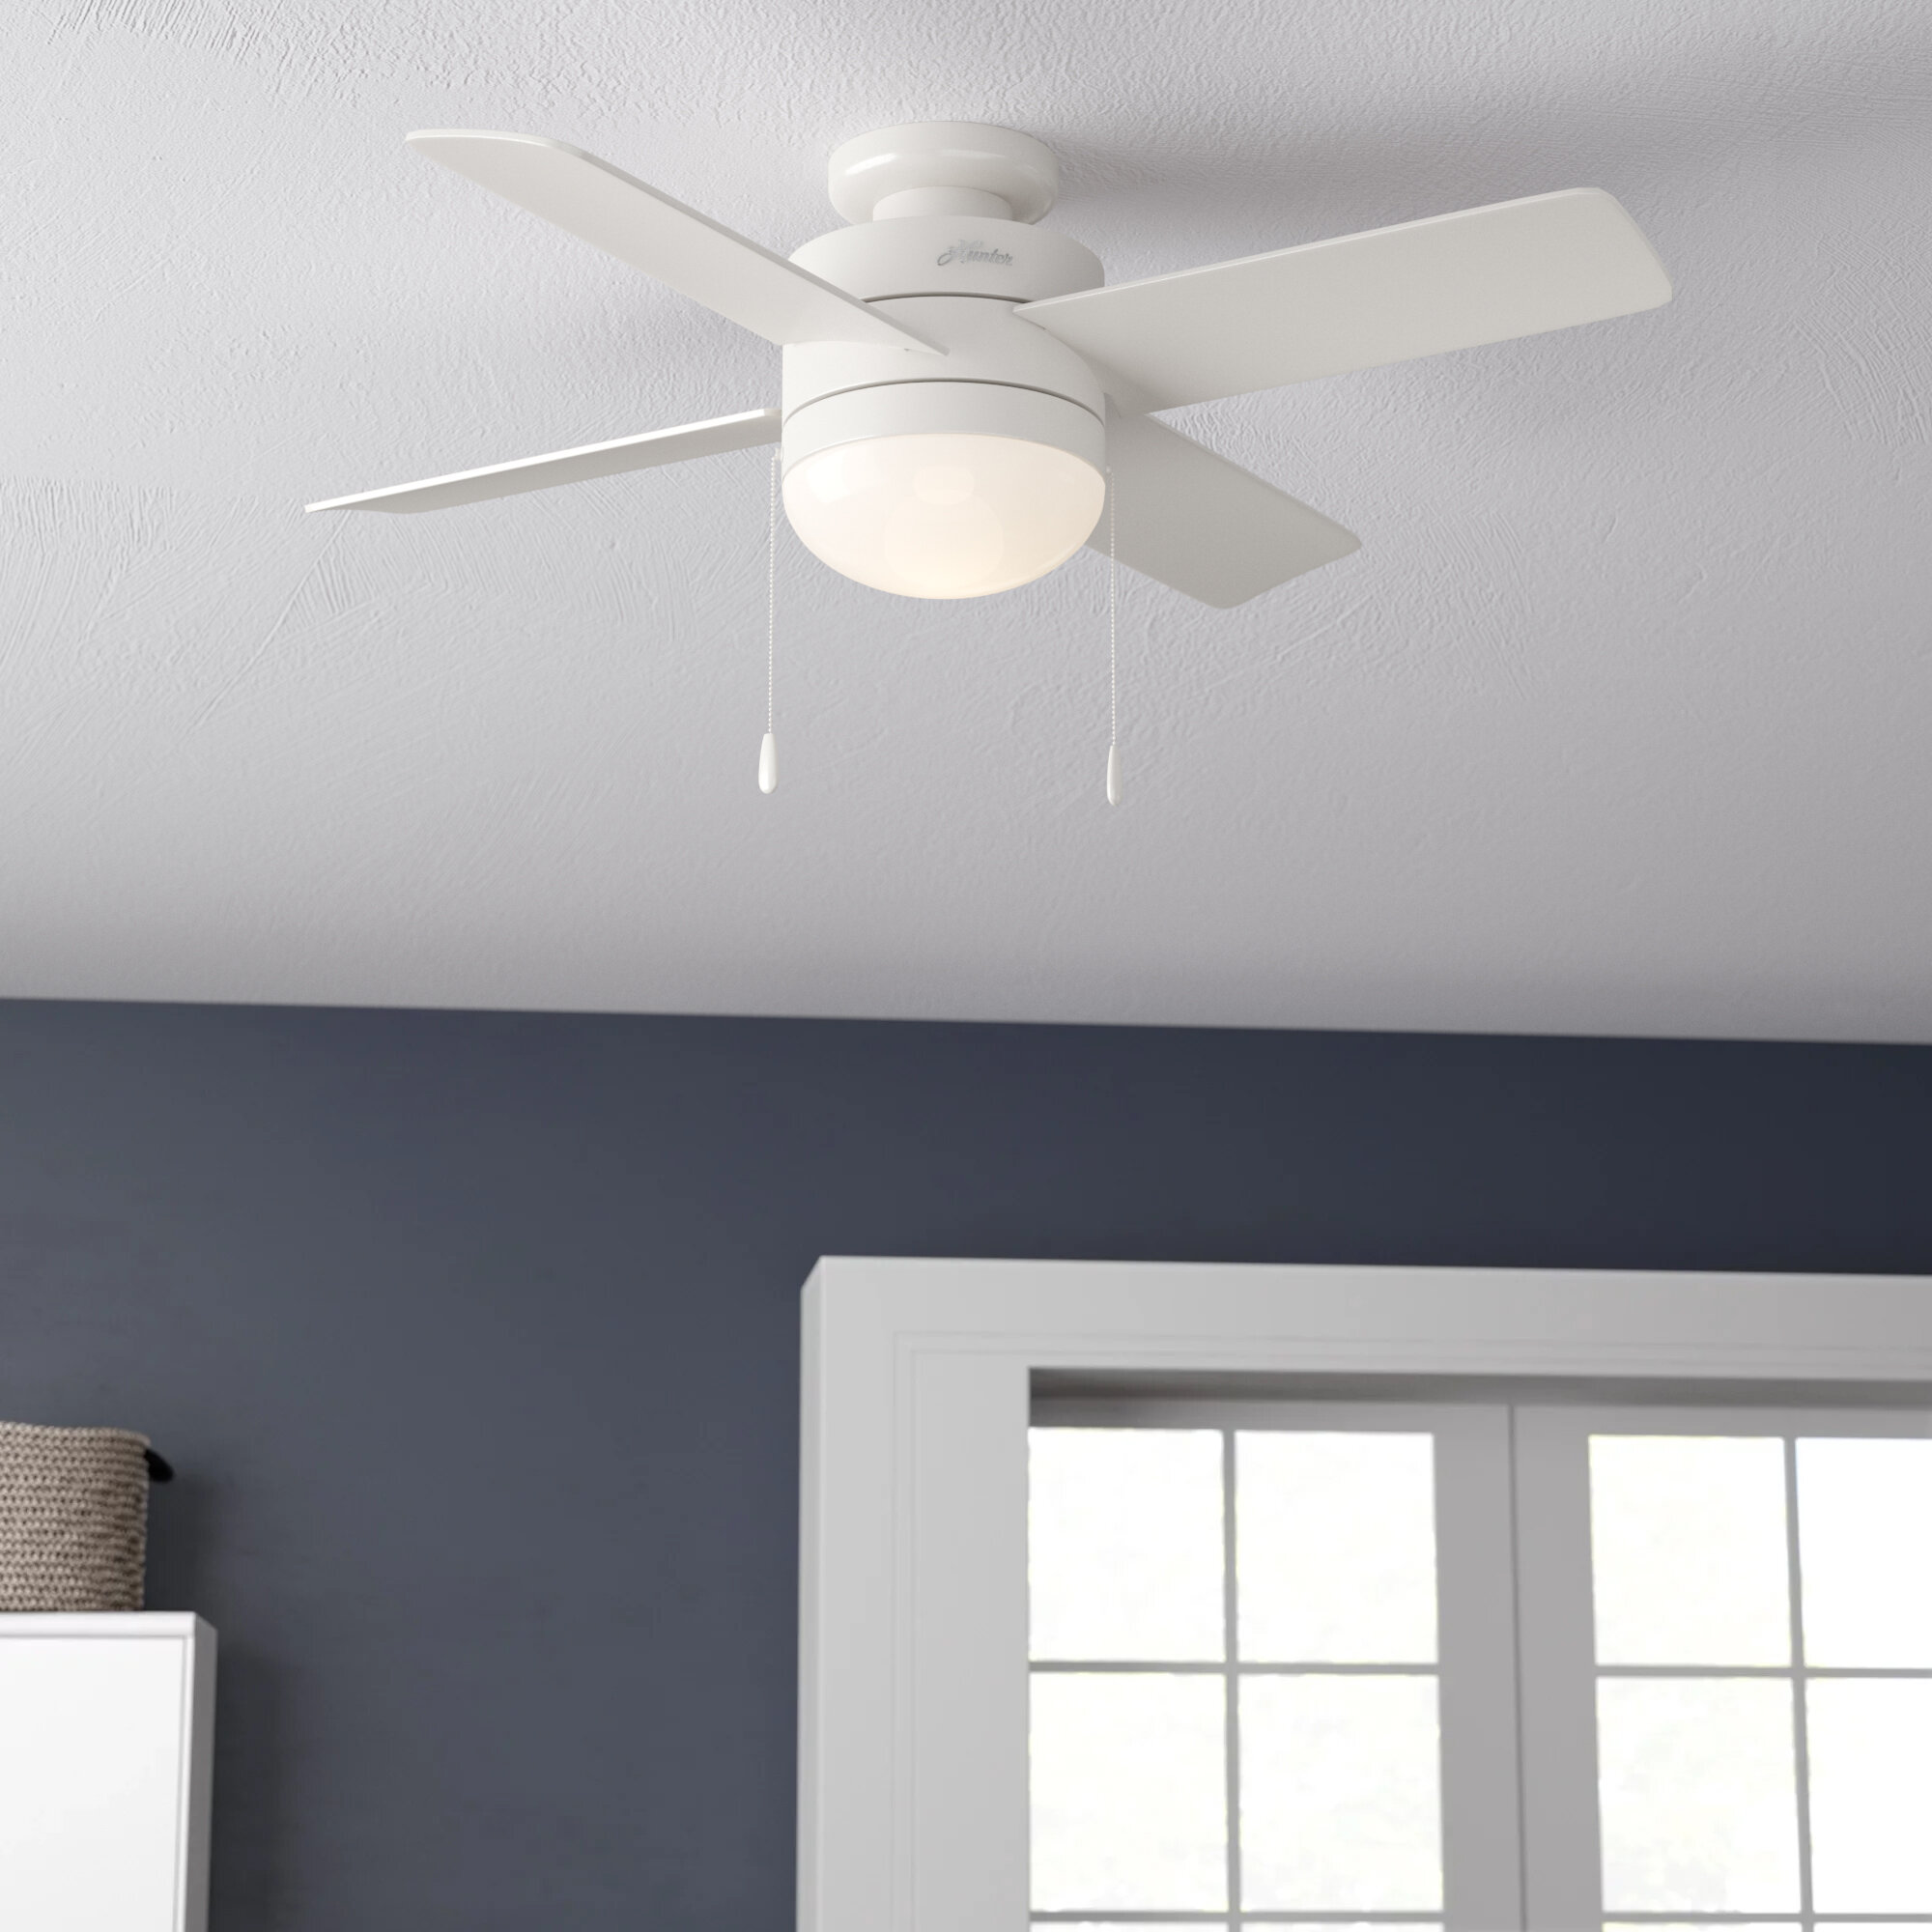 Hugger 44" Indoor White Ceiling Fan w LED Light Kit 5-White Blades Flush Mount 